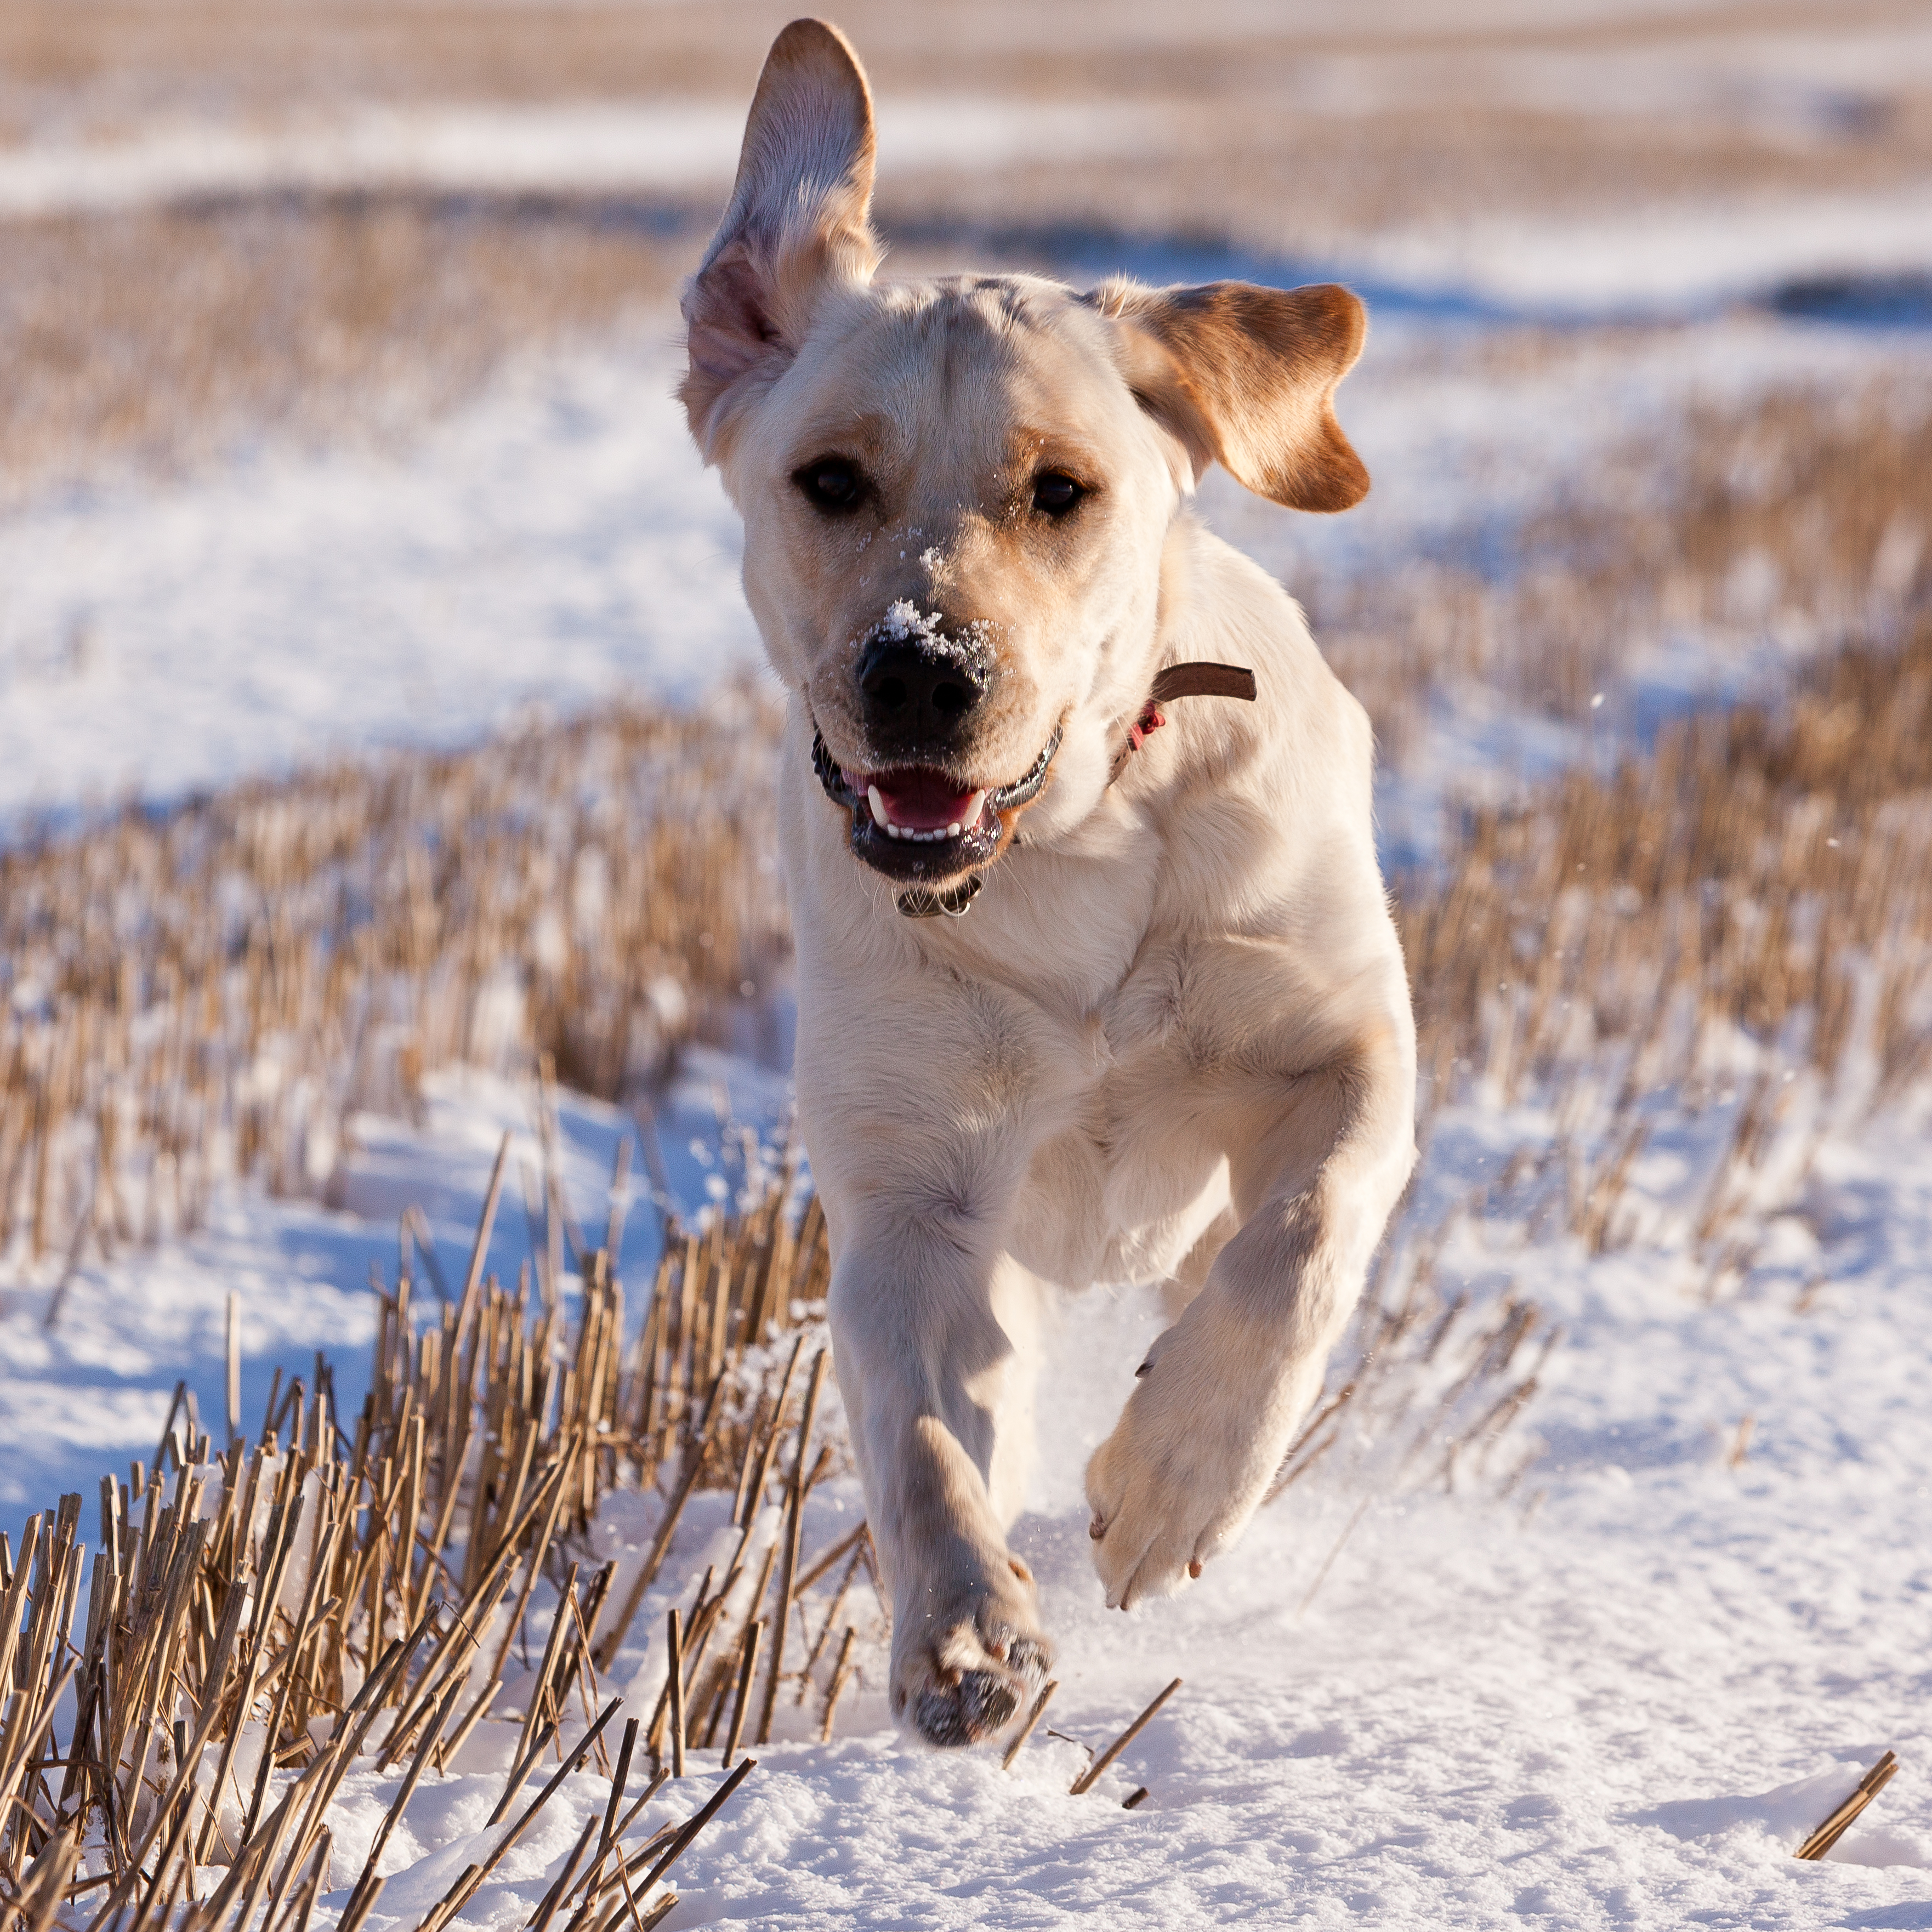 A yellow Labrador guide dog runs across a snowy field towards the camera